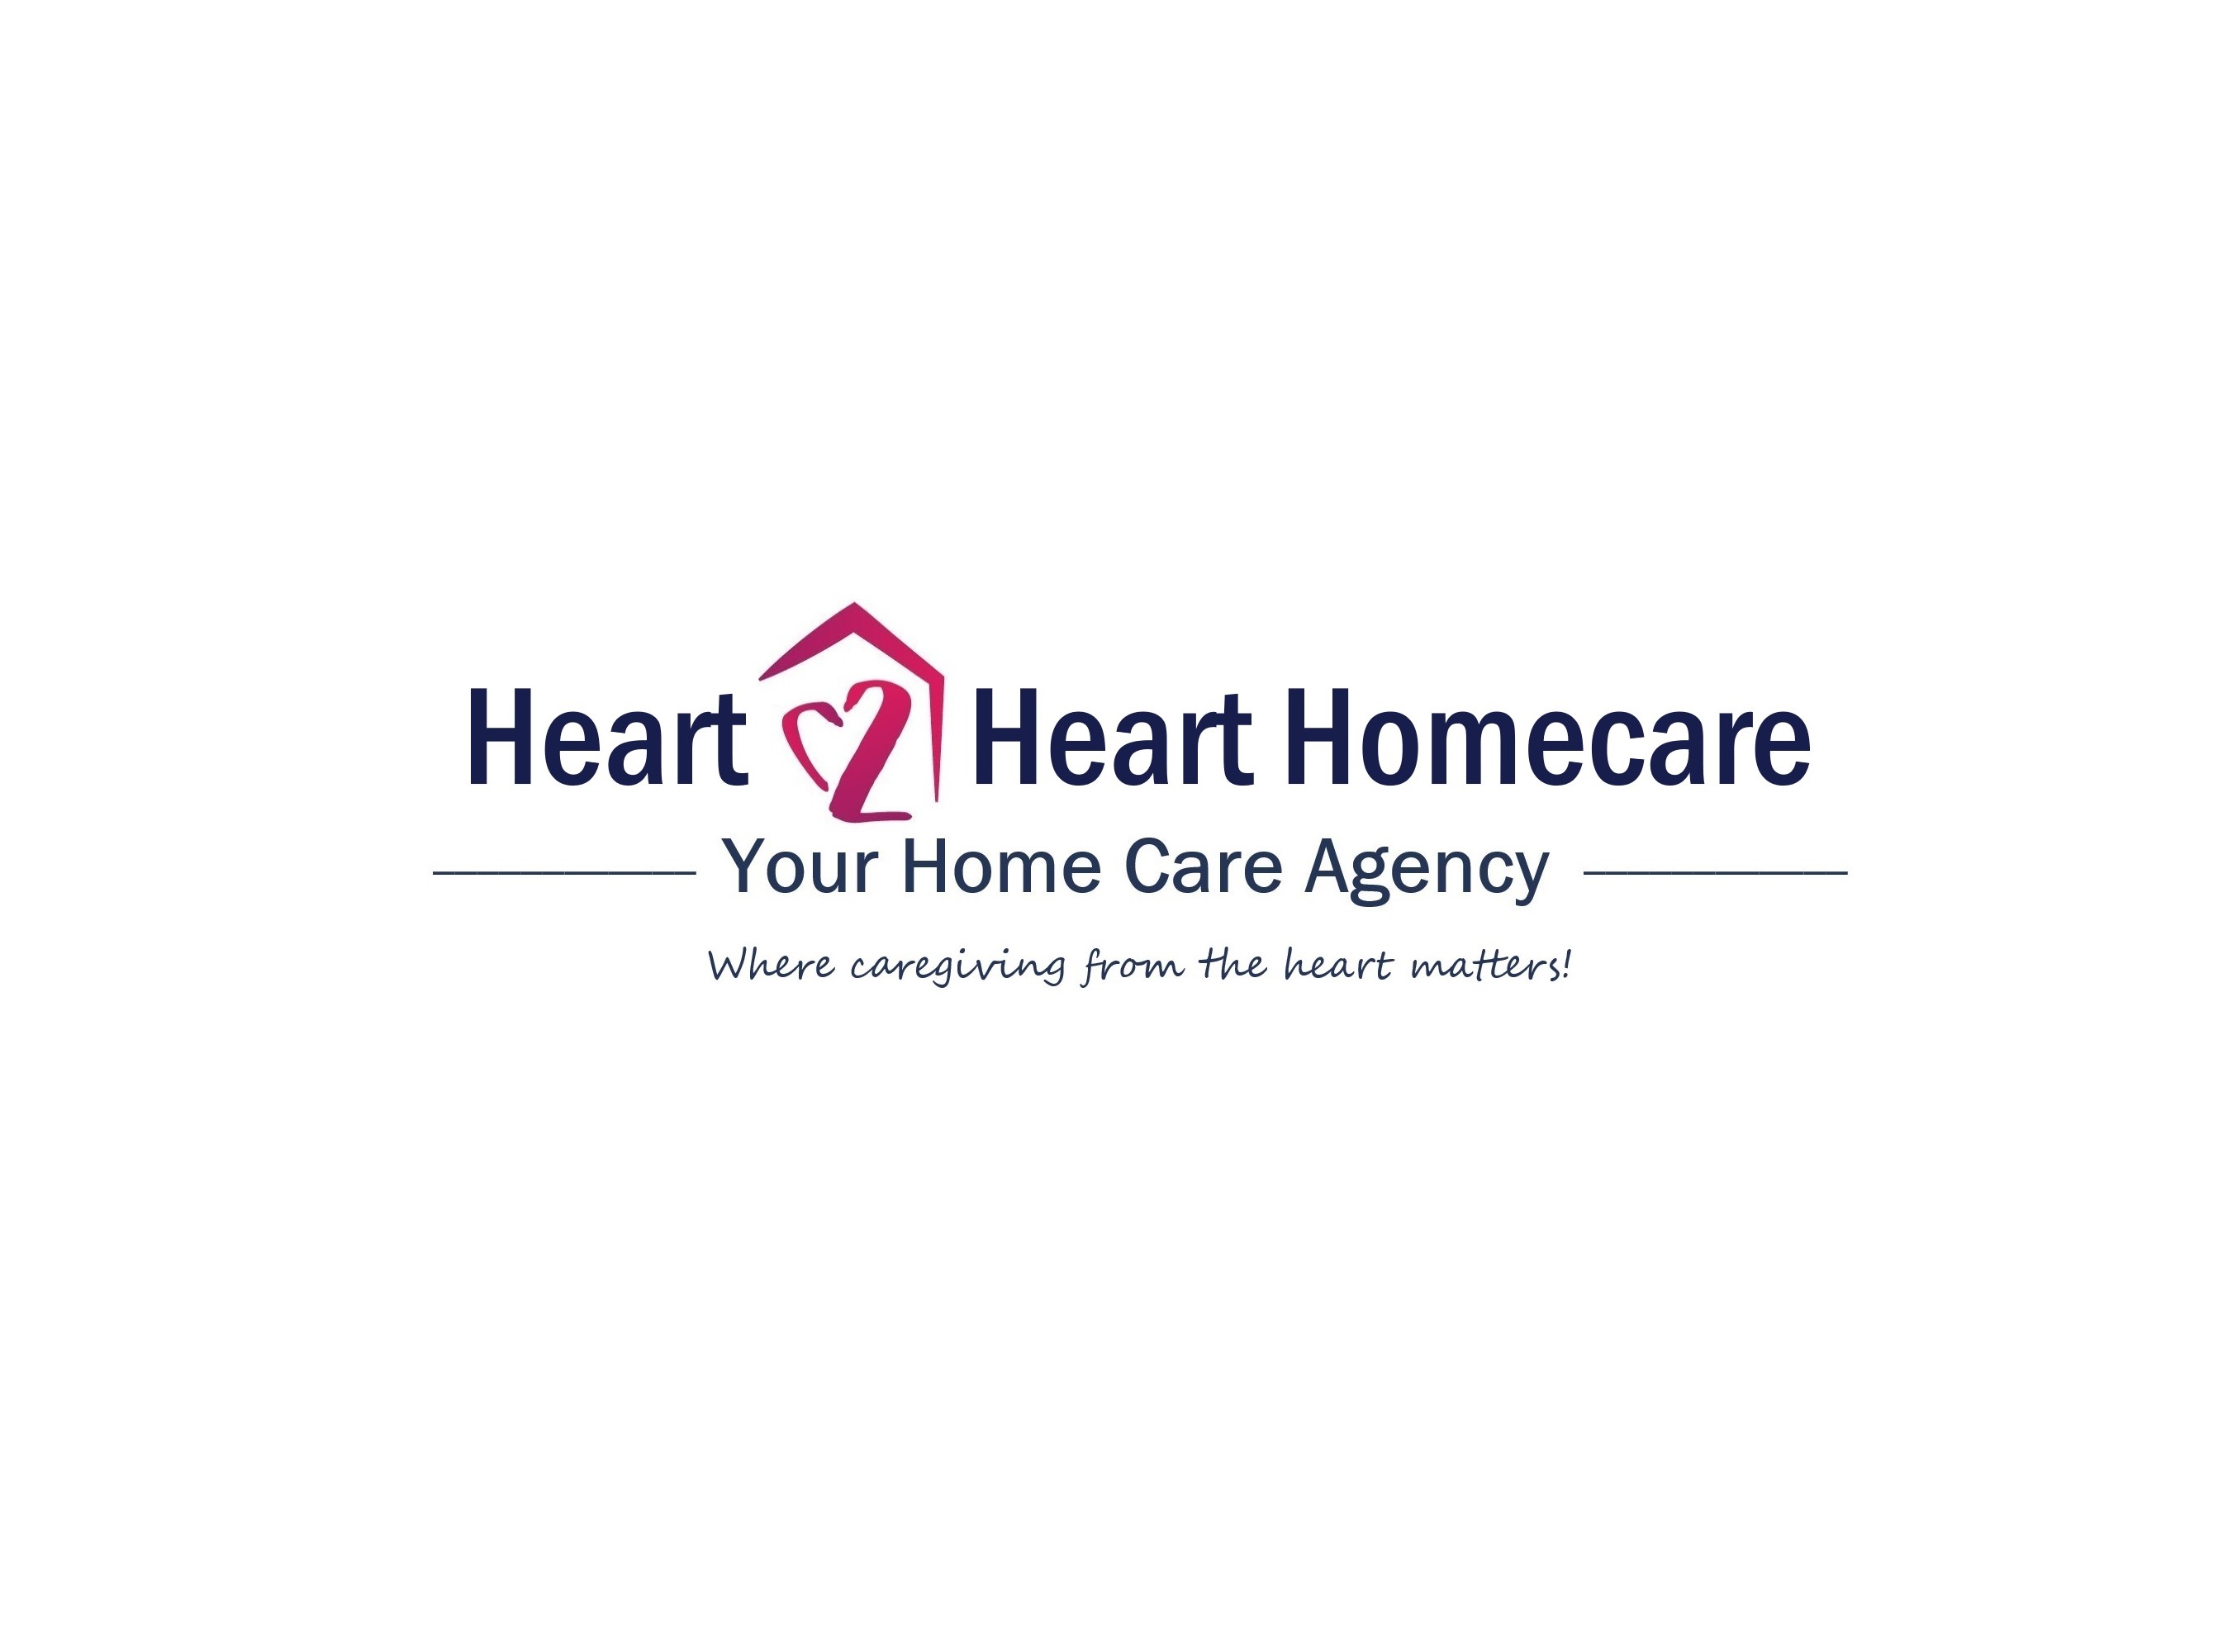 Heart 2 Heart Homecare - WA image